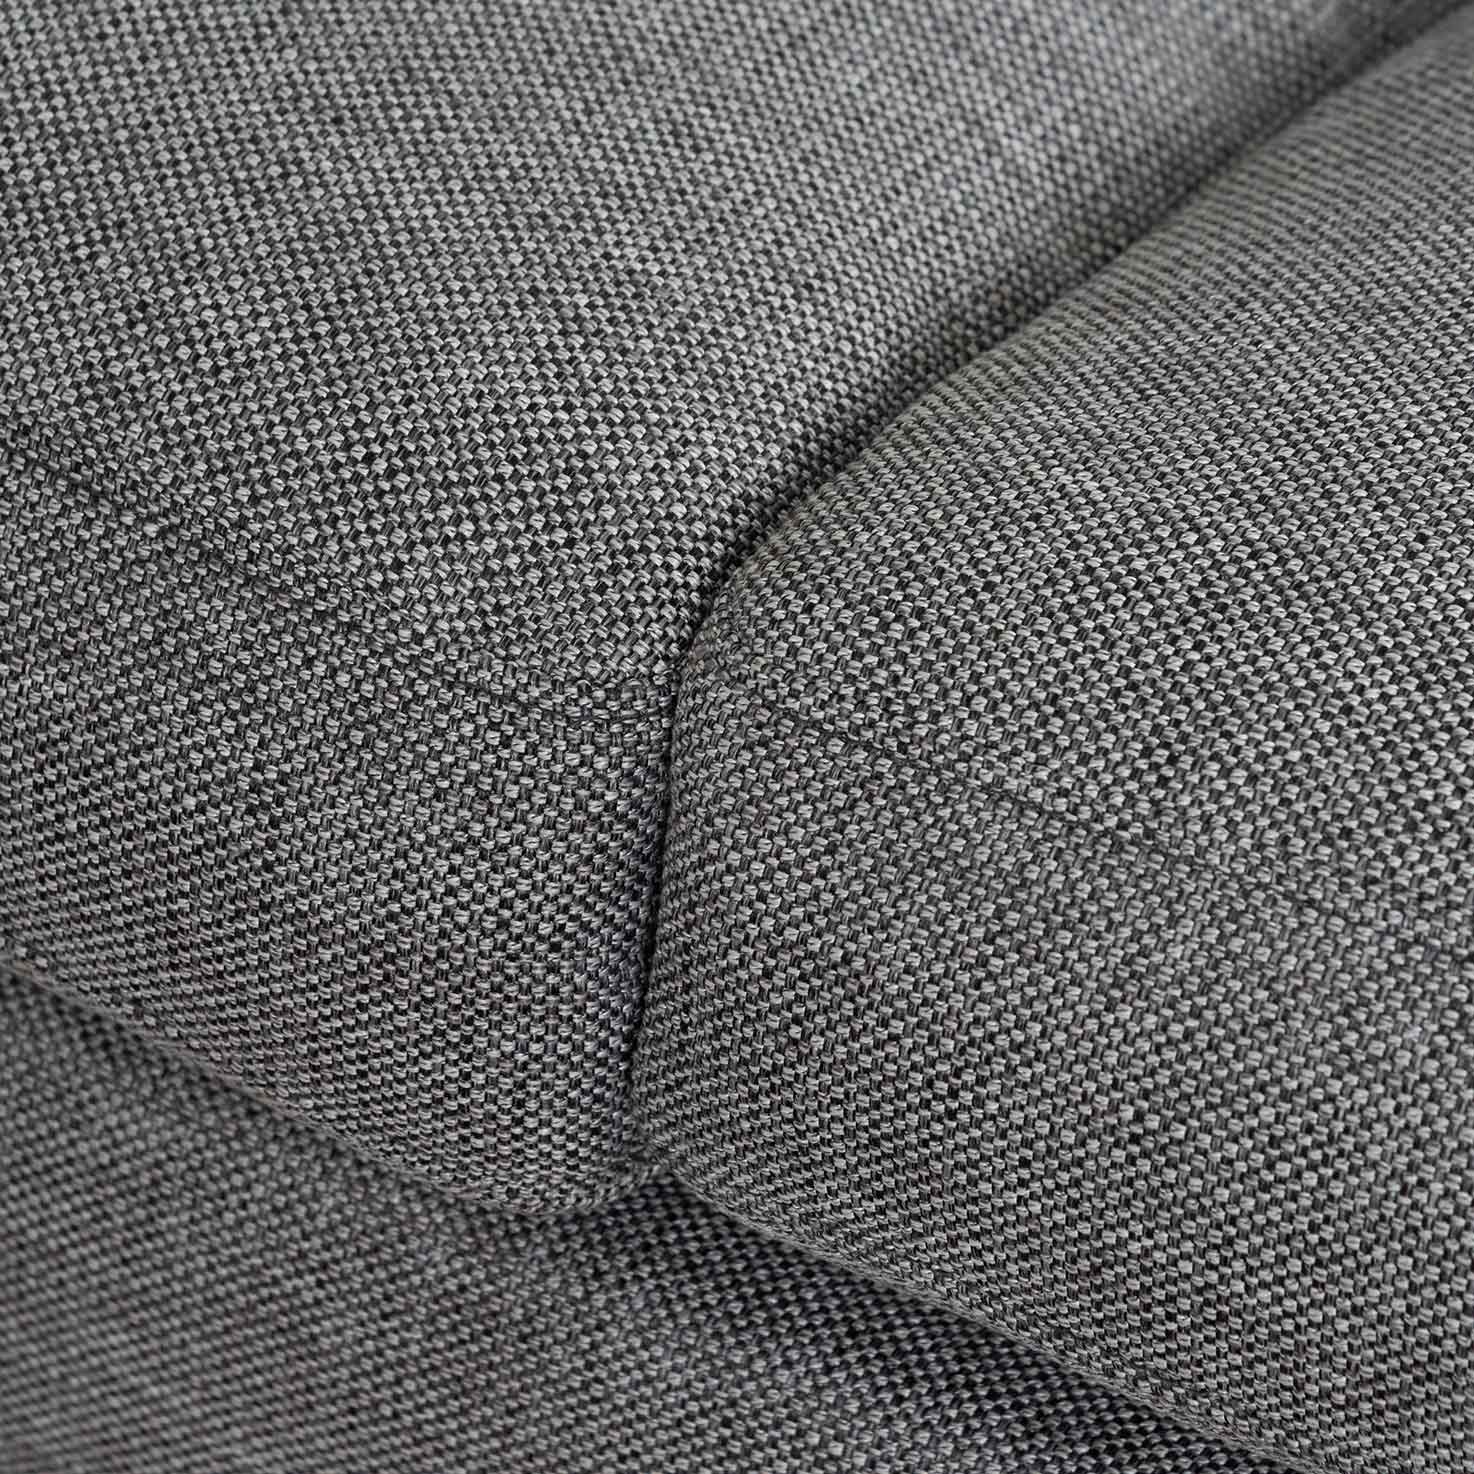 William 3S Sofa - Graphite Grey - Sofas